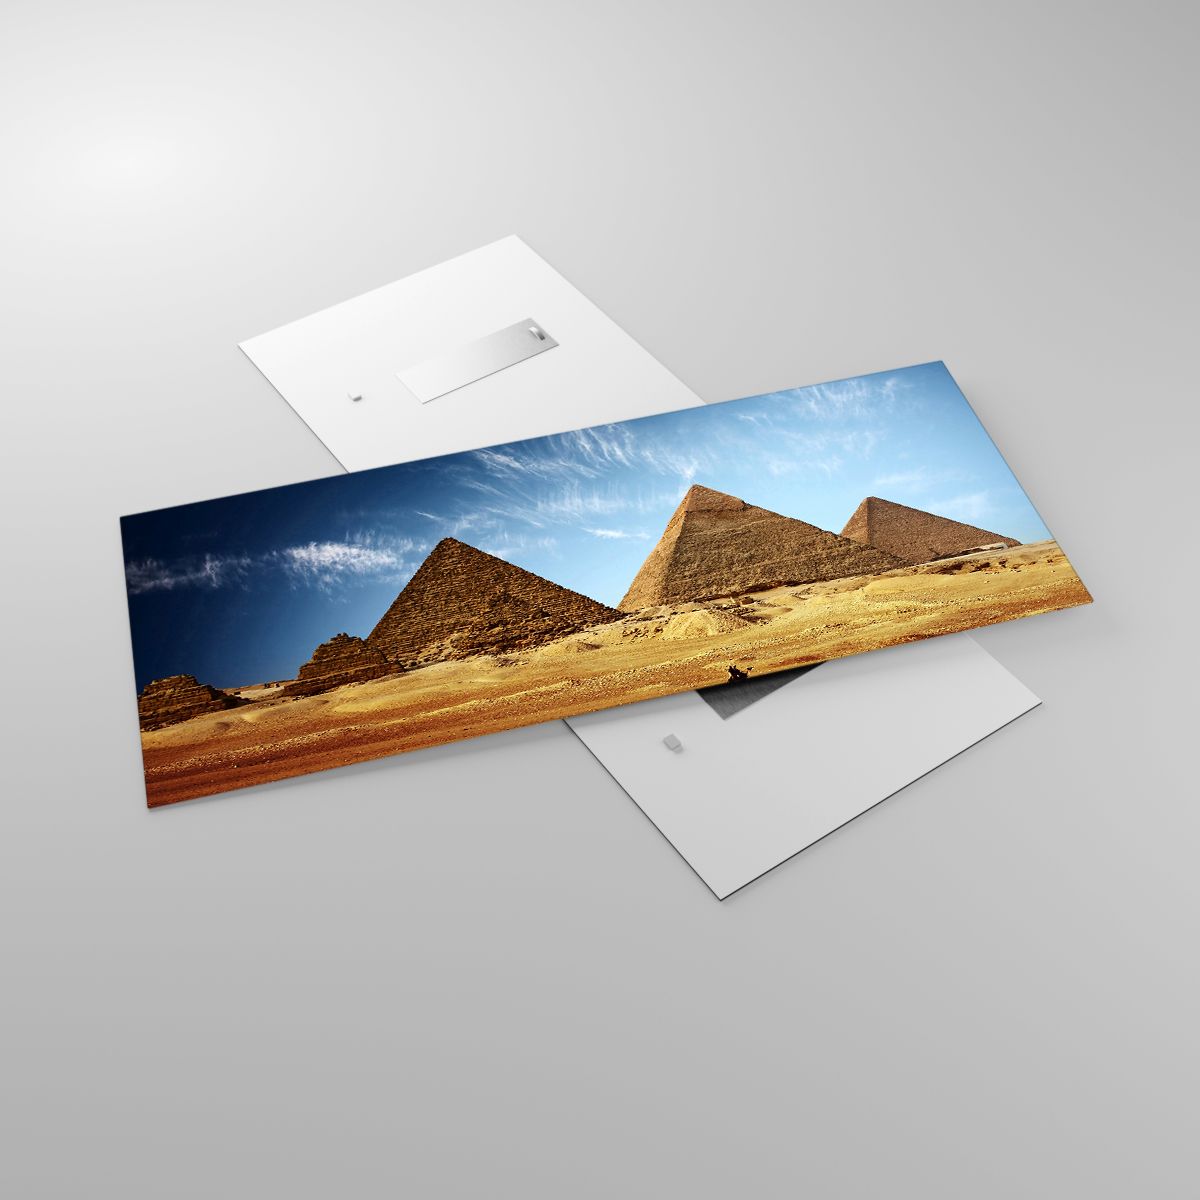 Glasbild Pyramiden, Glasbild Die Architektur, Glasbild Landschaft, Glasbild Ägypten, Glasbild Wüste